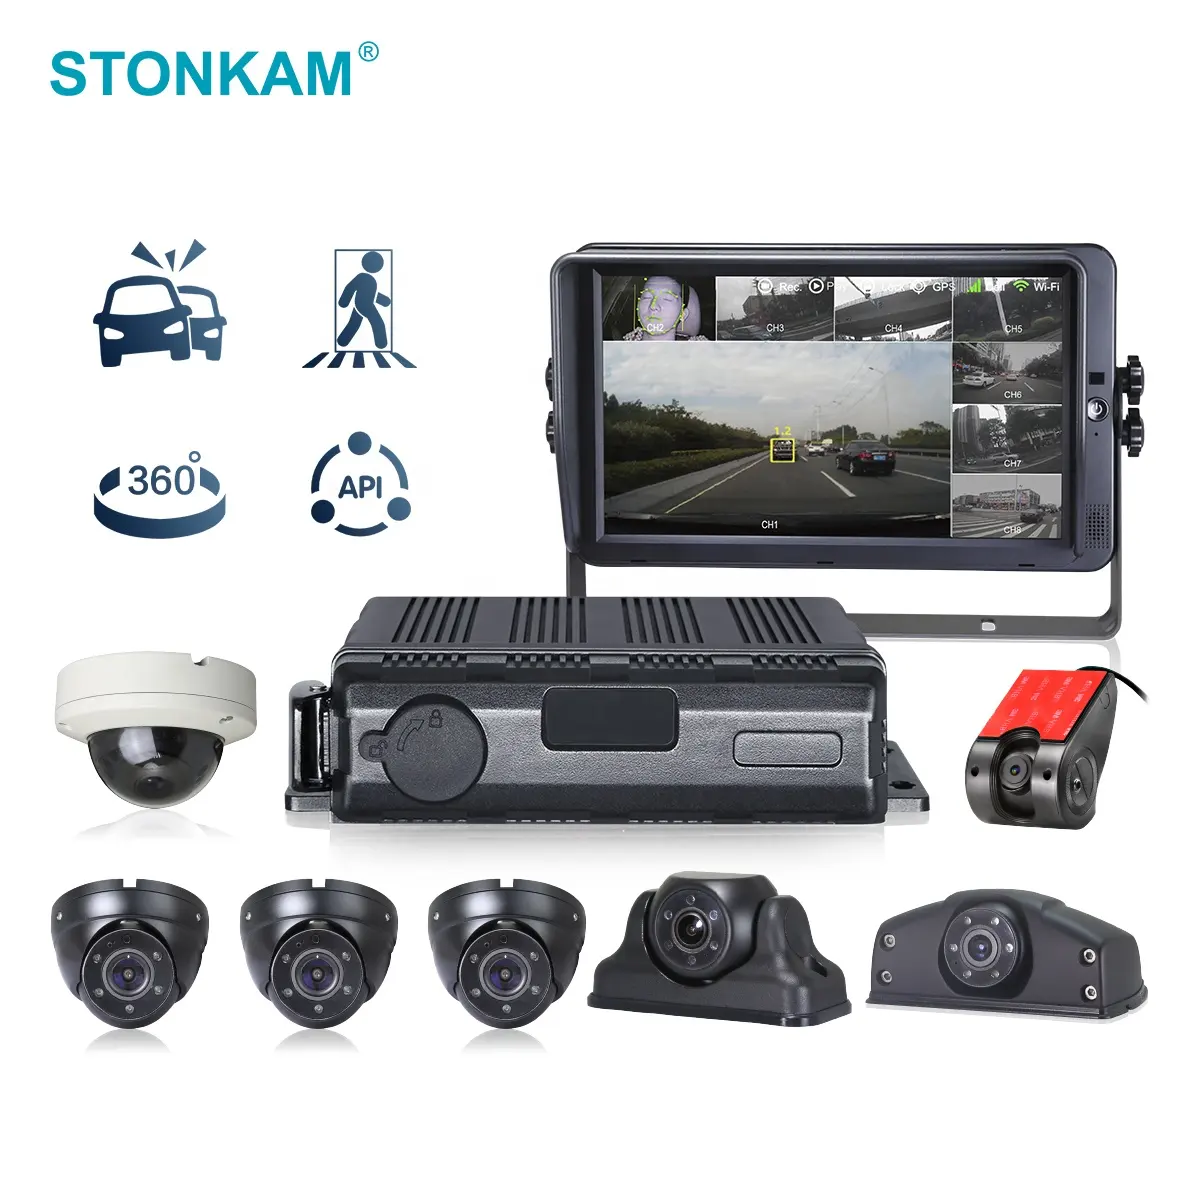 كاميرا للسيارة من STONKAM تدعم شبكات 4G 8CH MDVR نظام كاميرا ADAS+DMS+BSD/360 خوارزمية IP69K مضادة للماء لتأمين السيارة وإدارة أسطول السيارات